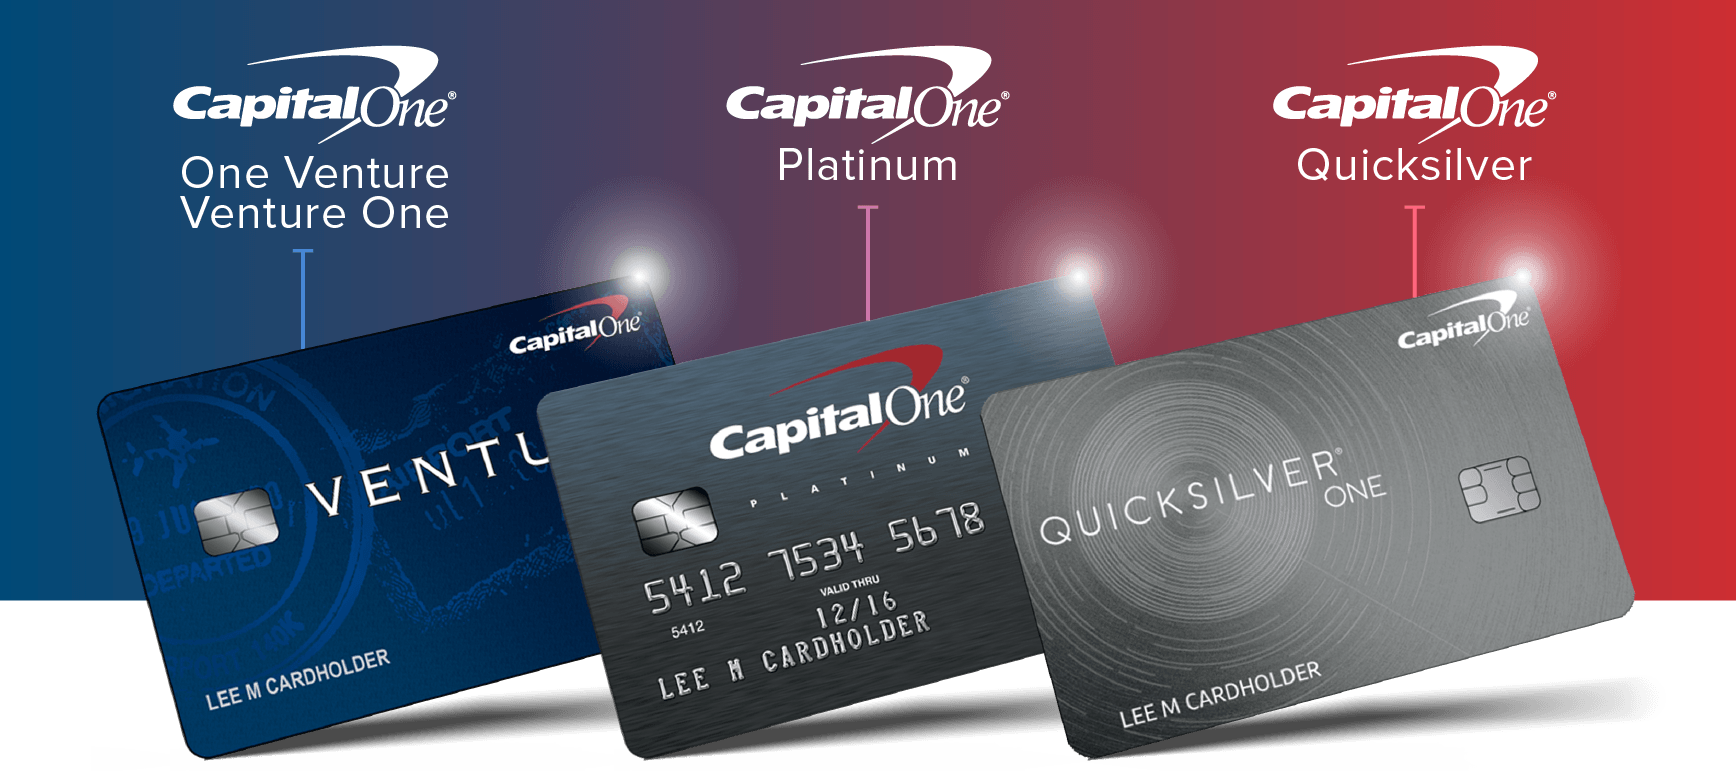 Capital one platinum visa credit card review